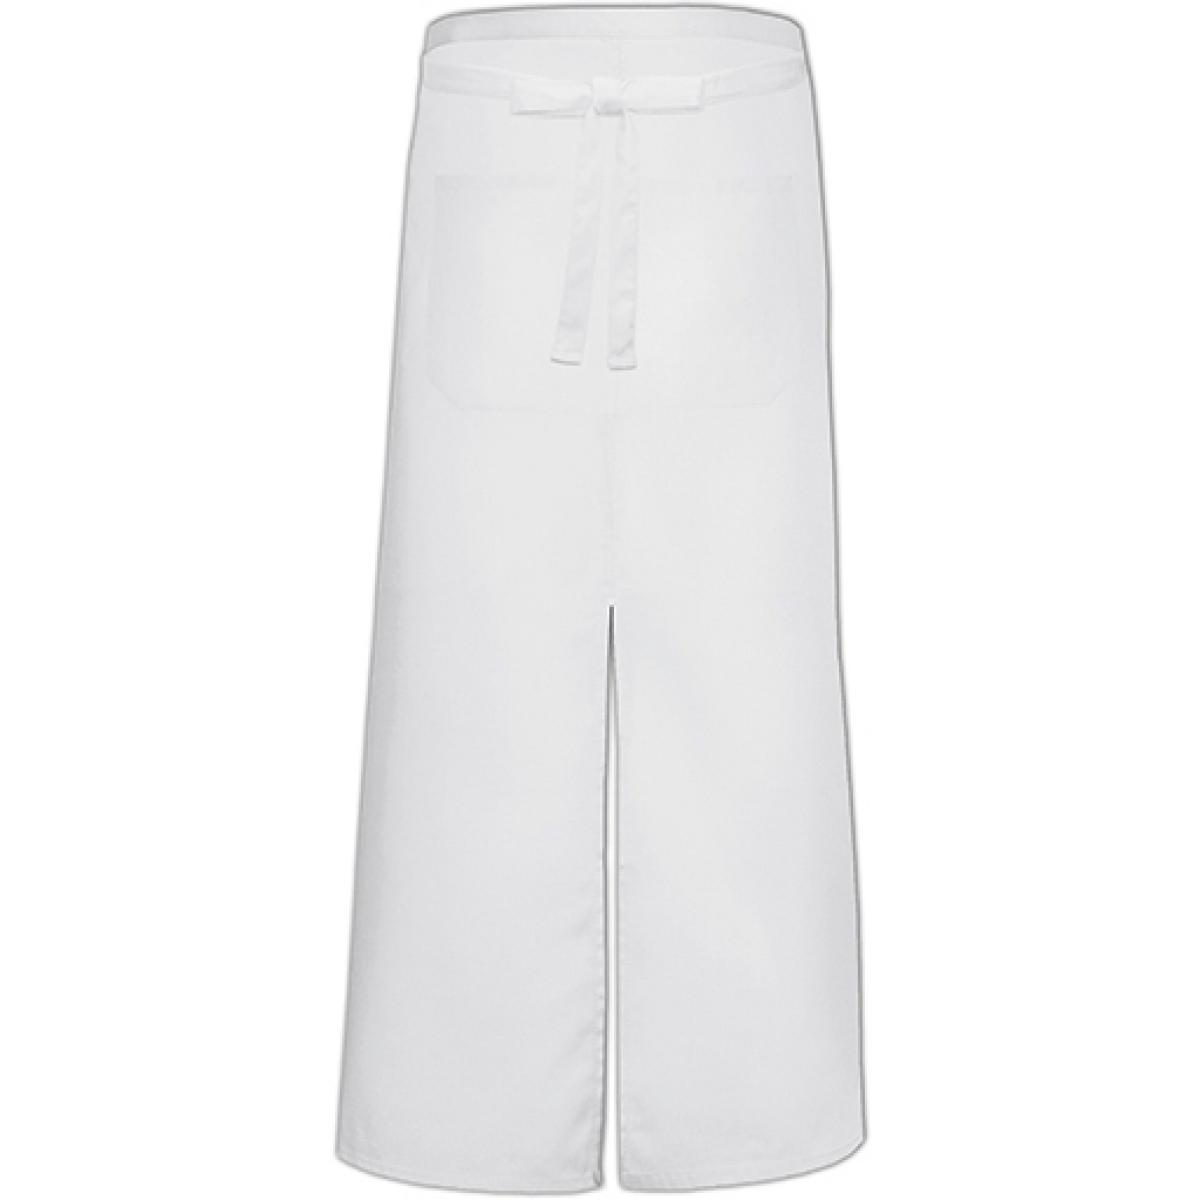 Hersteller: Link Kitchen Wear Herstellernummer: FS100100SP Z Artikelbezeichnung: Bistro Apron with Split and Front Pocket - 100 x 100 cm Farbe: White